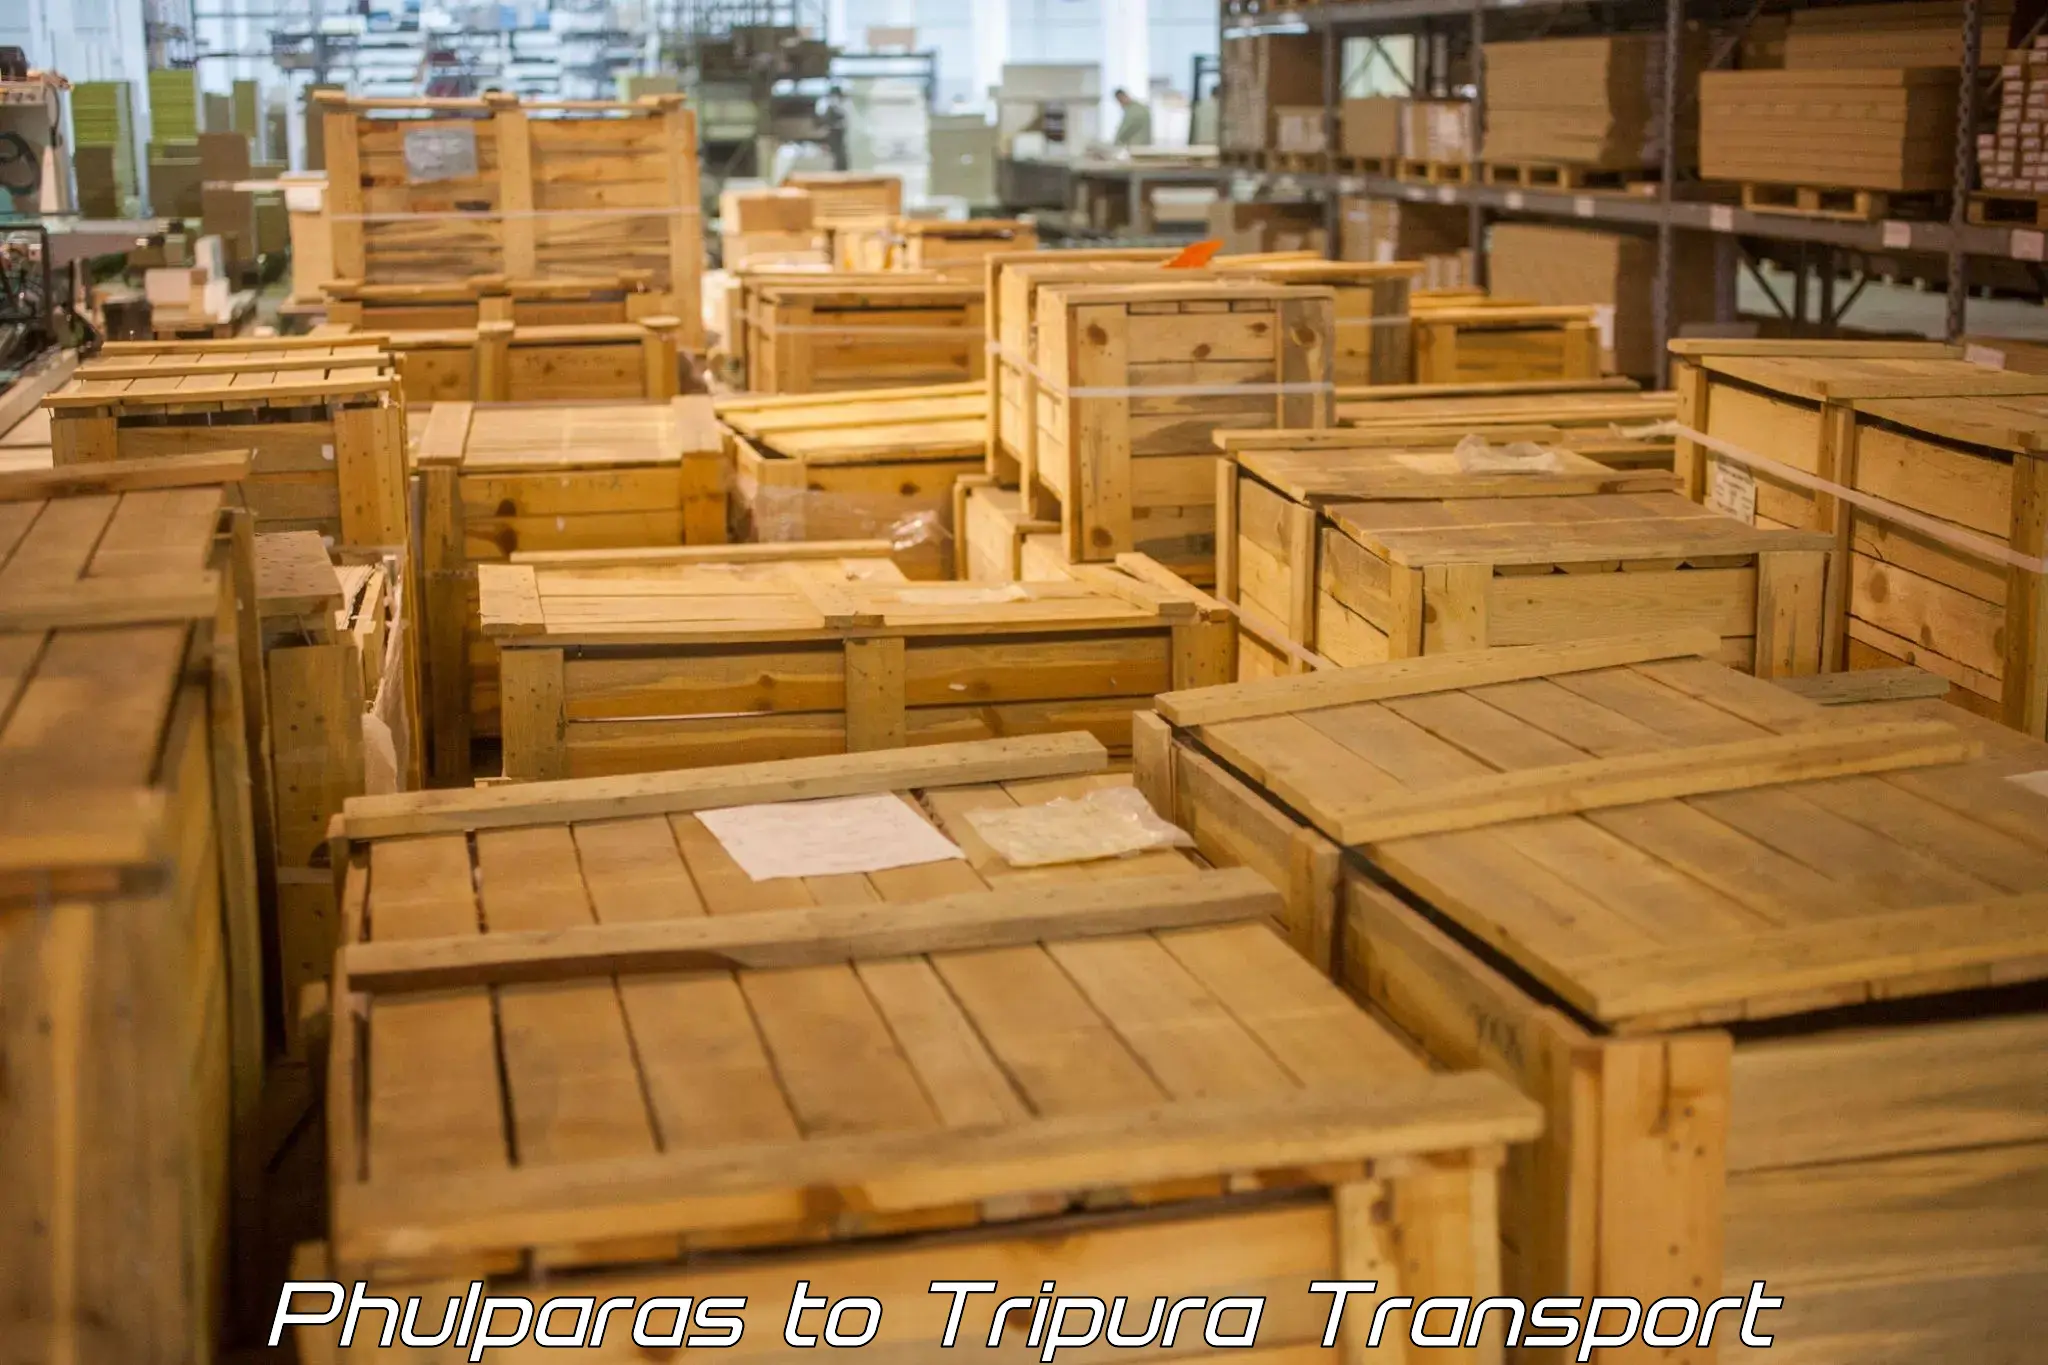 Lorry transport service Phulparas to Udaipur Tripura